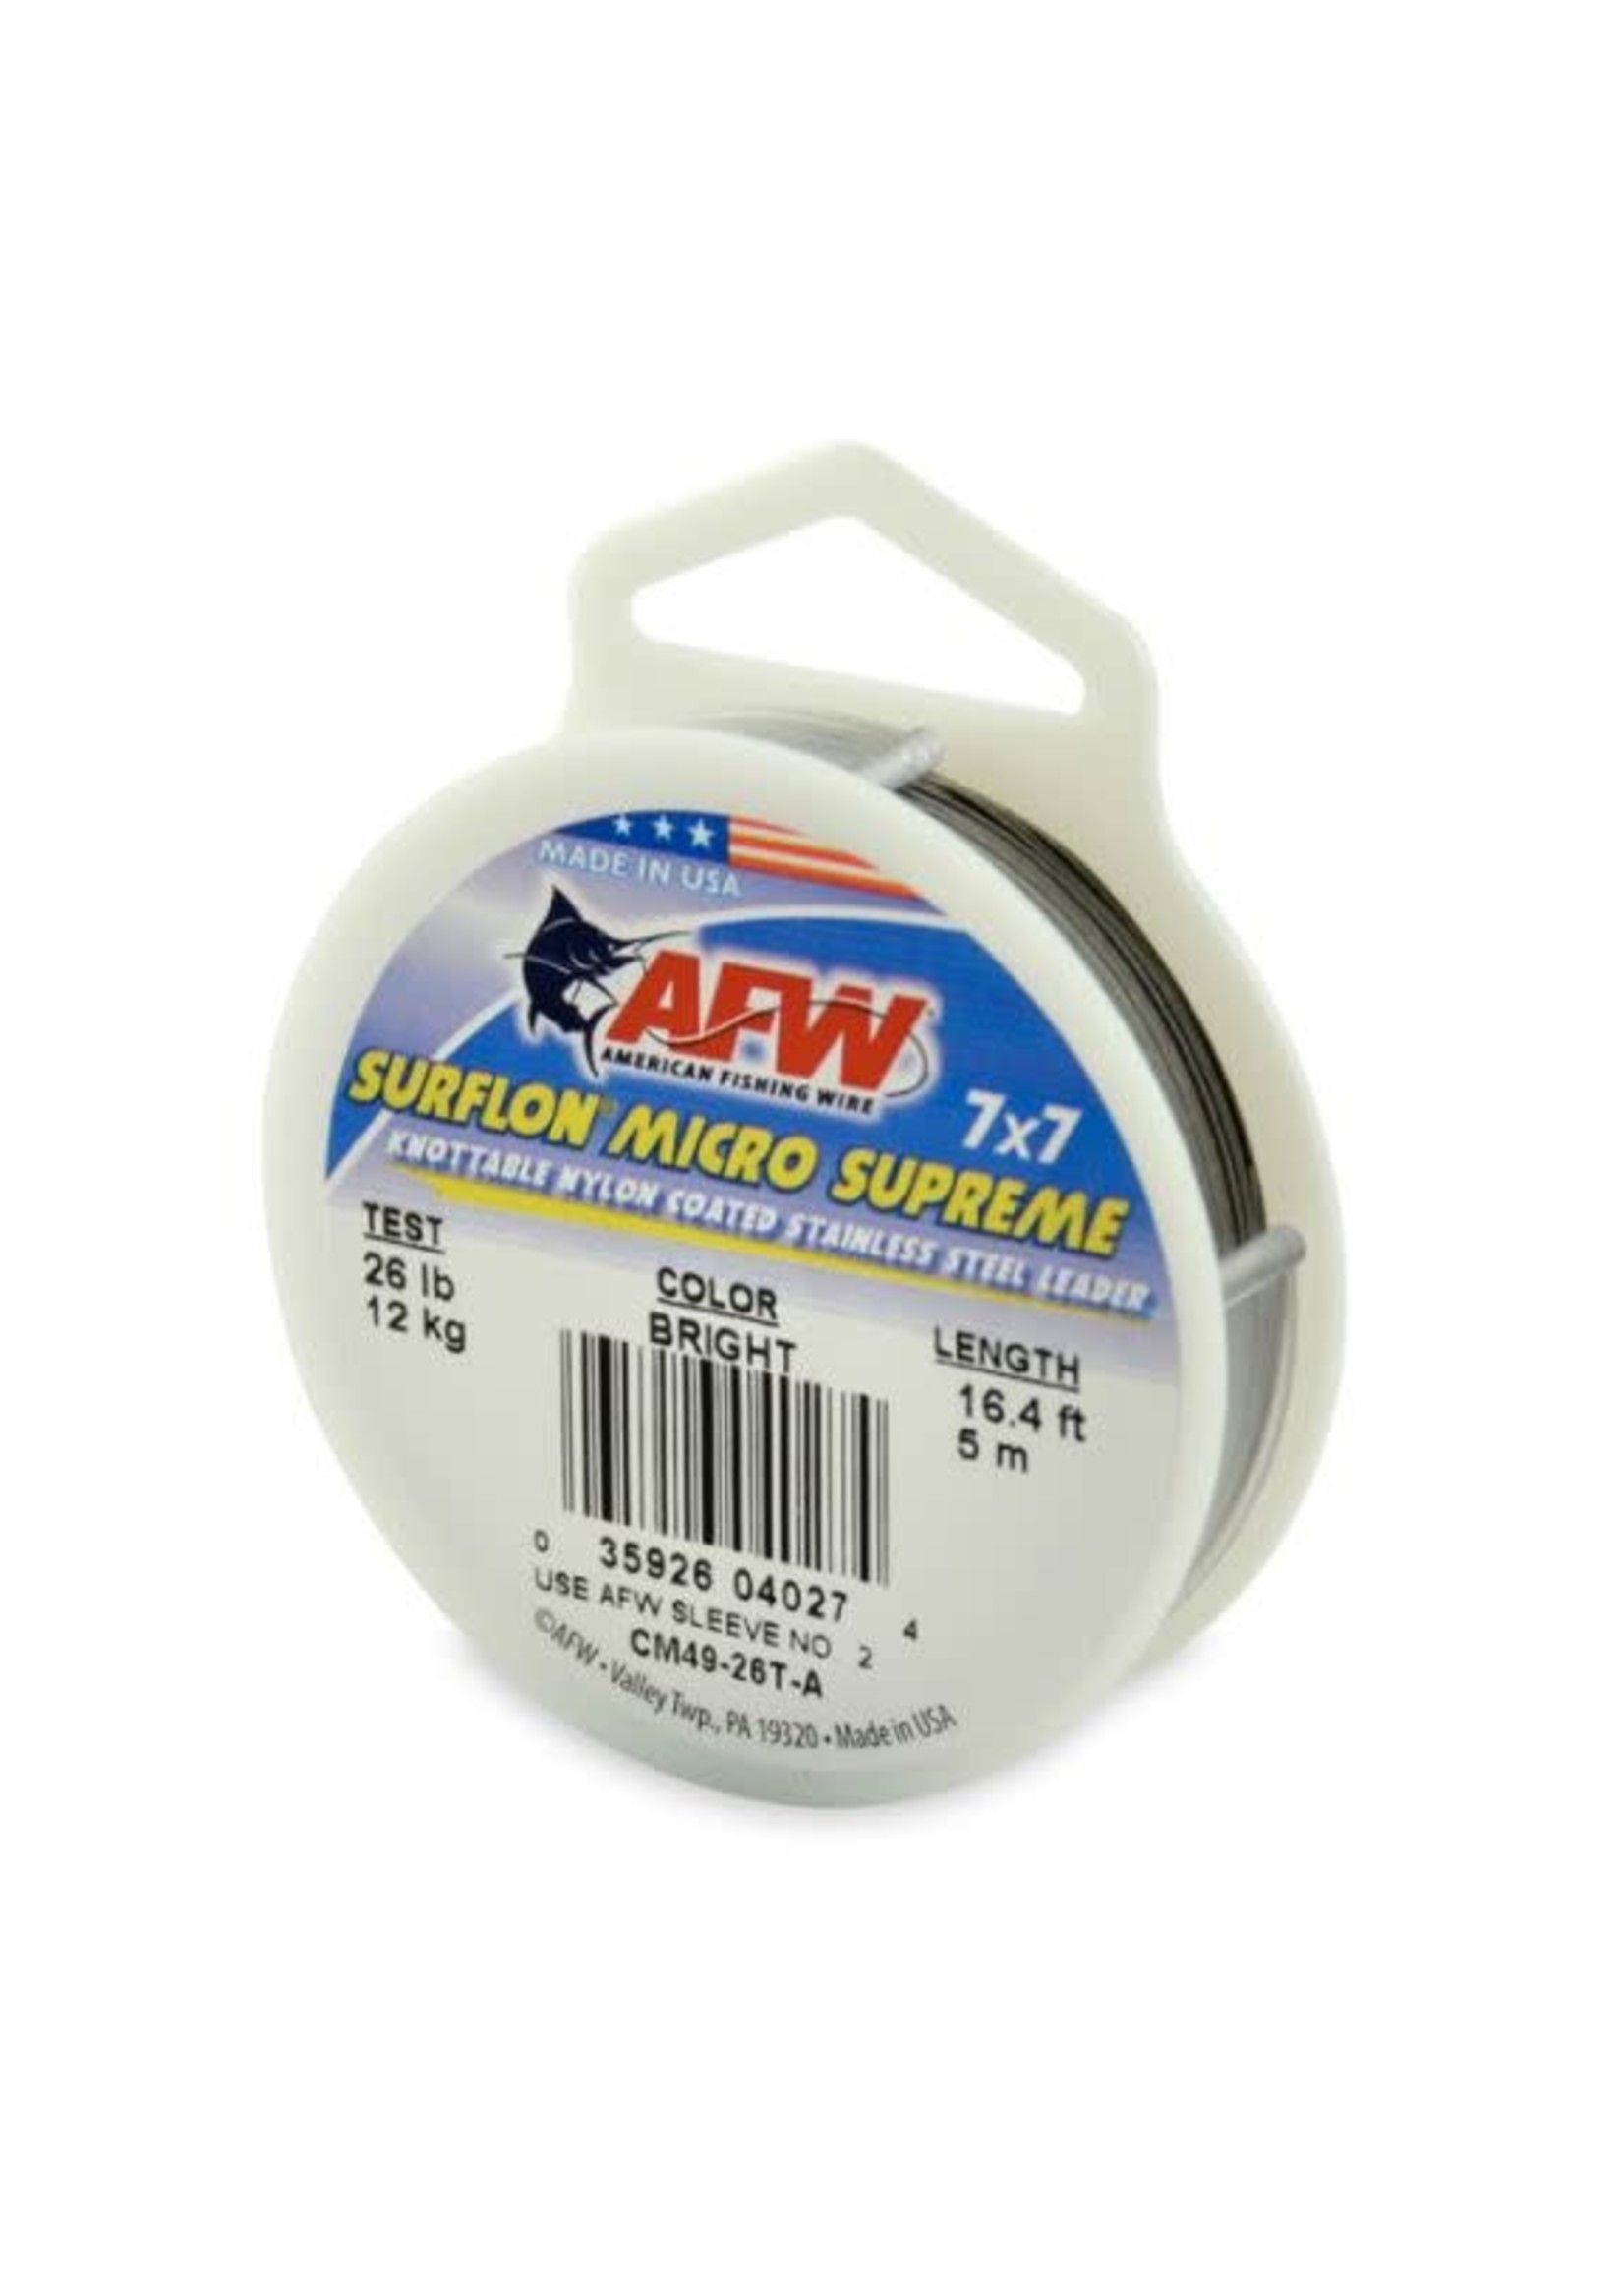 AFW Surflon Micro Supreme 7x7 Steel Leader Wire - 26# 16' Bright Nylon